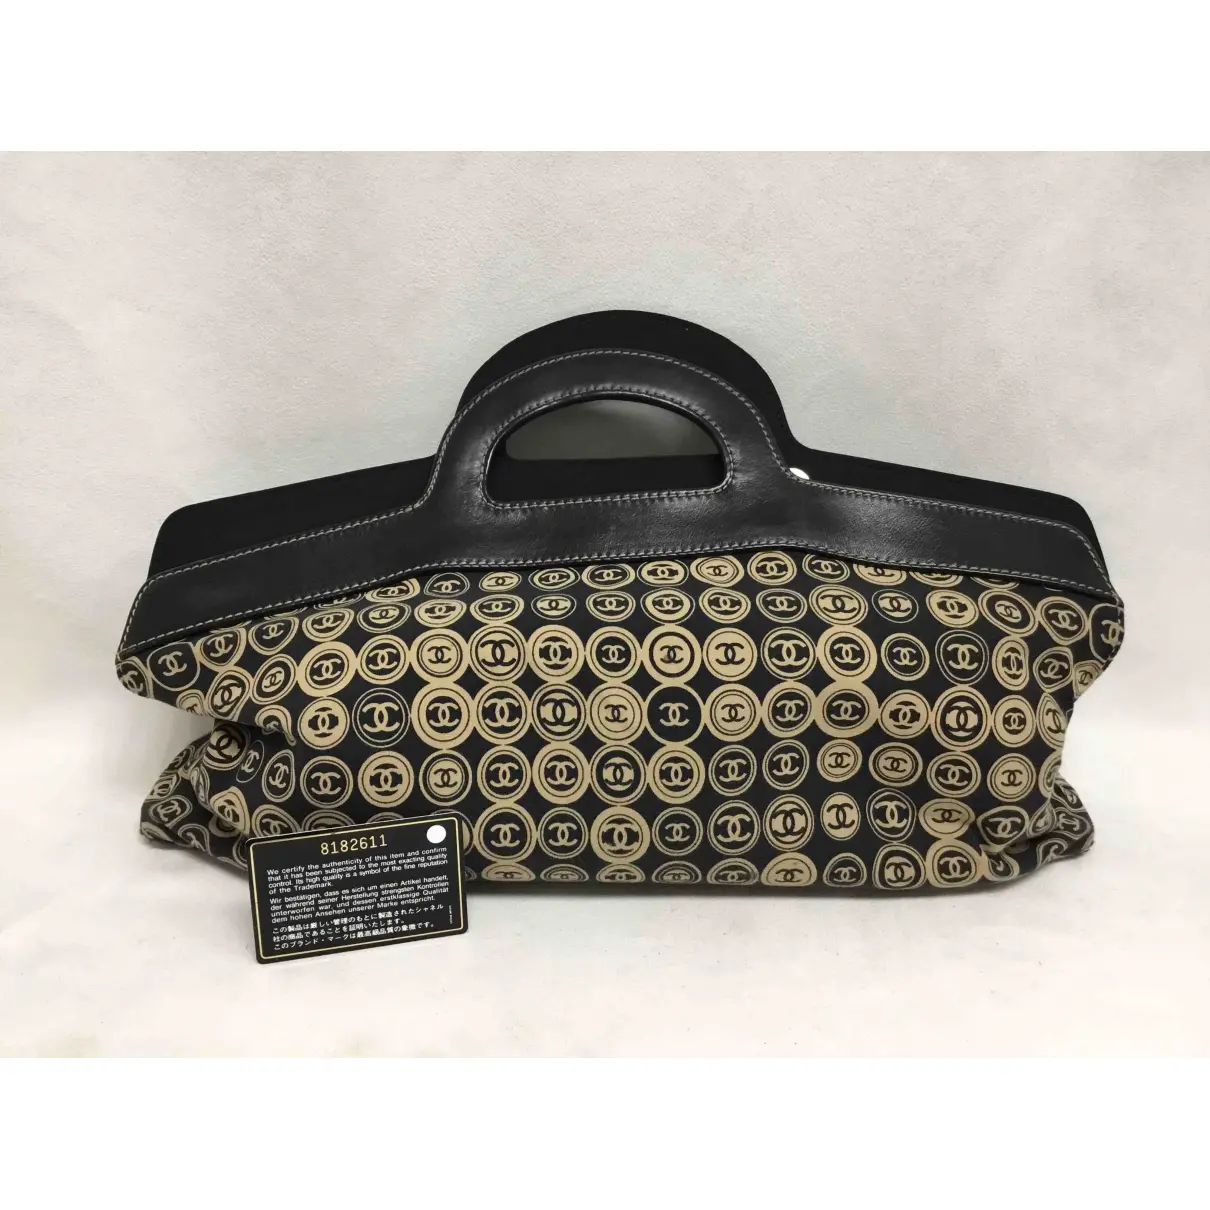 Cloth handbag Chanel - Vintage